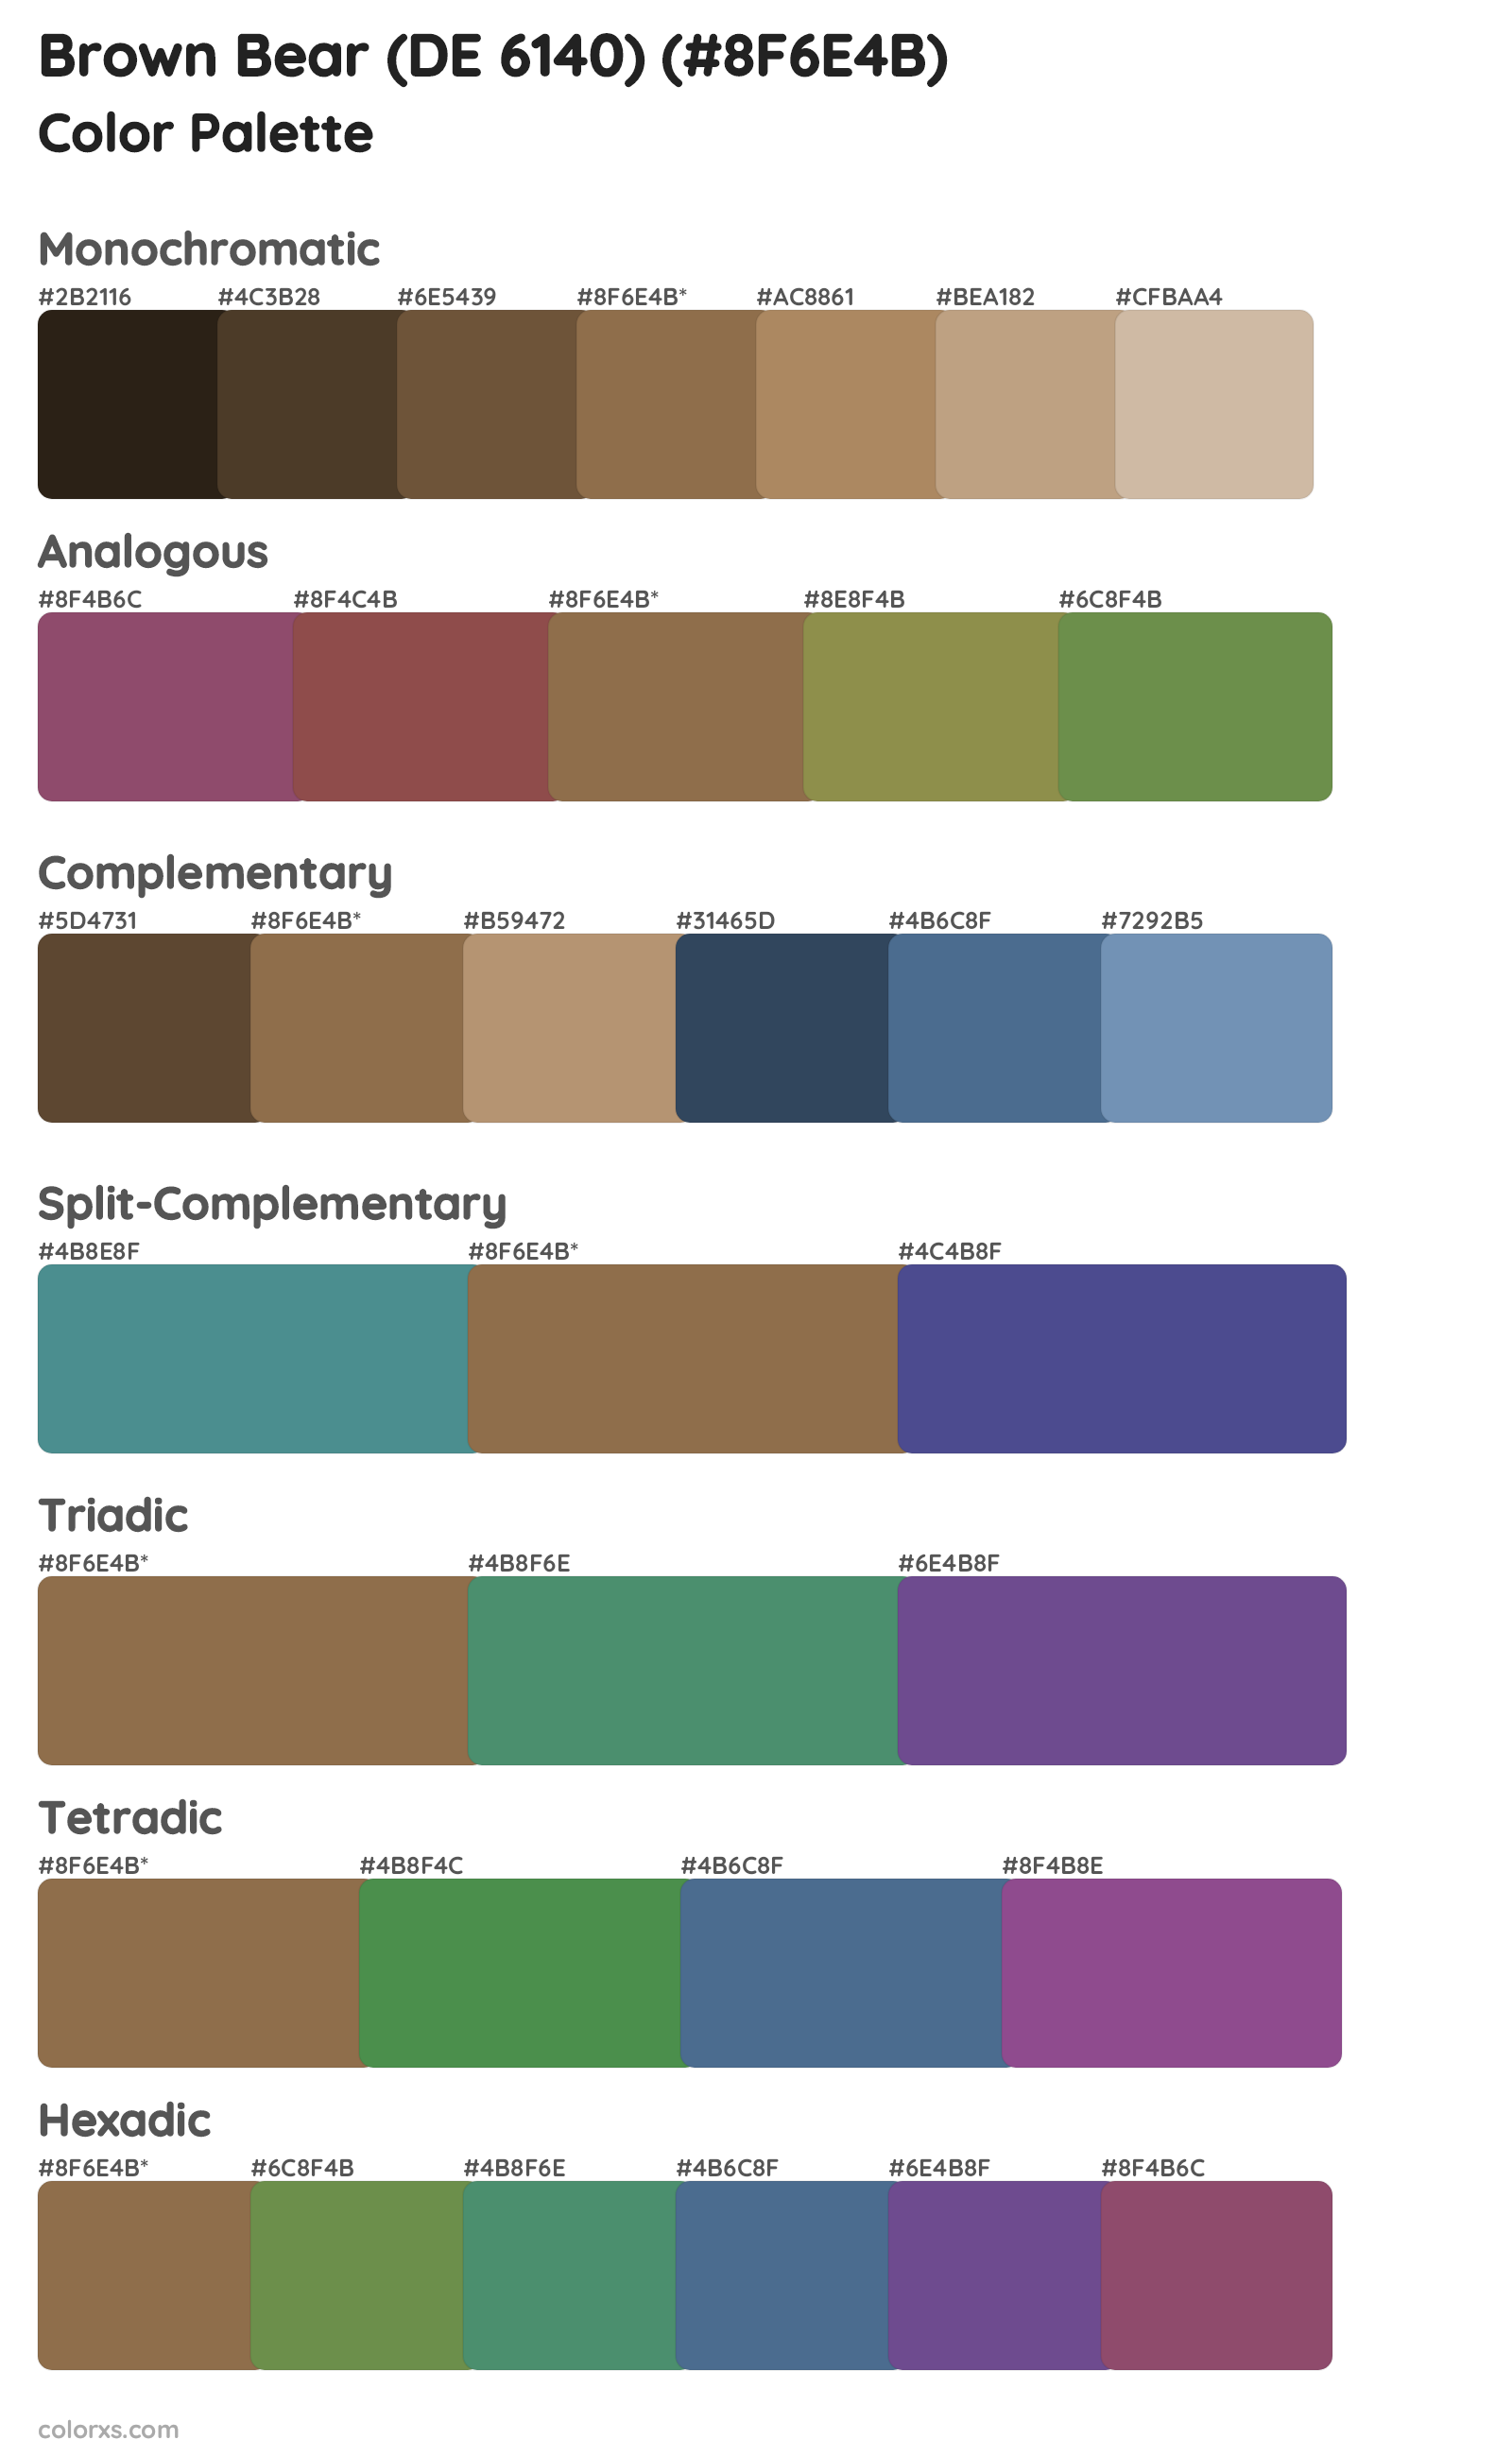 Brown Bear (DE 6140) Color Scheme Palettes